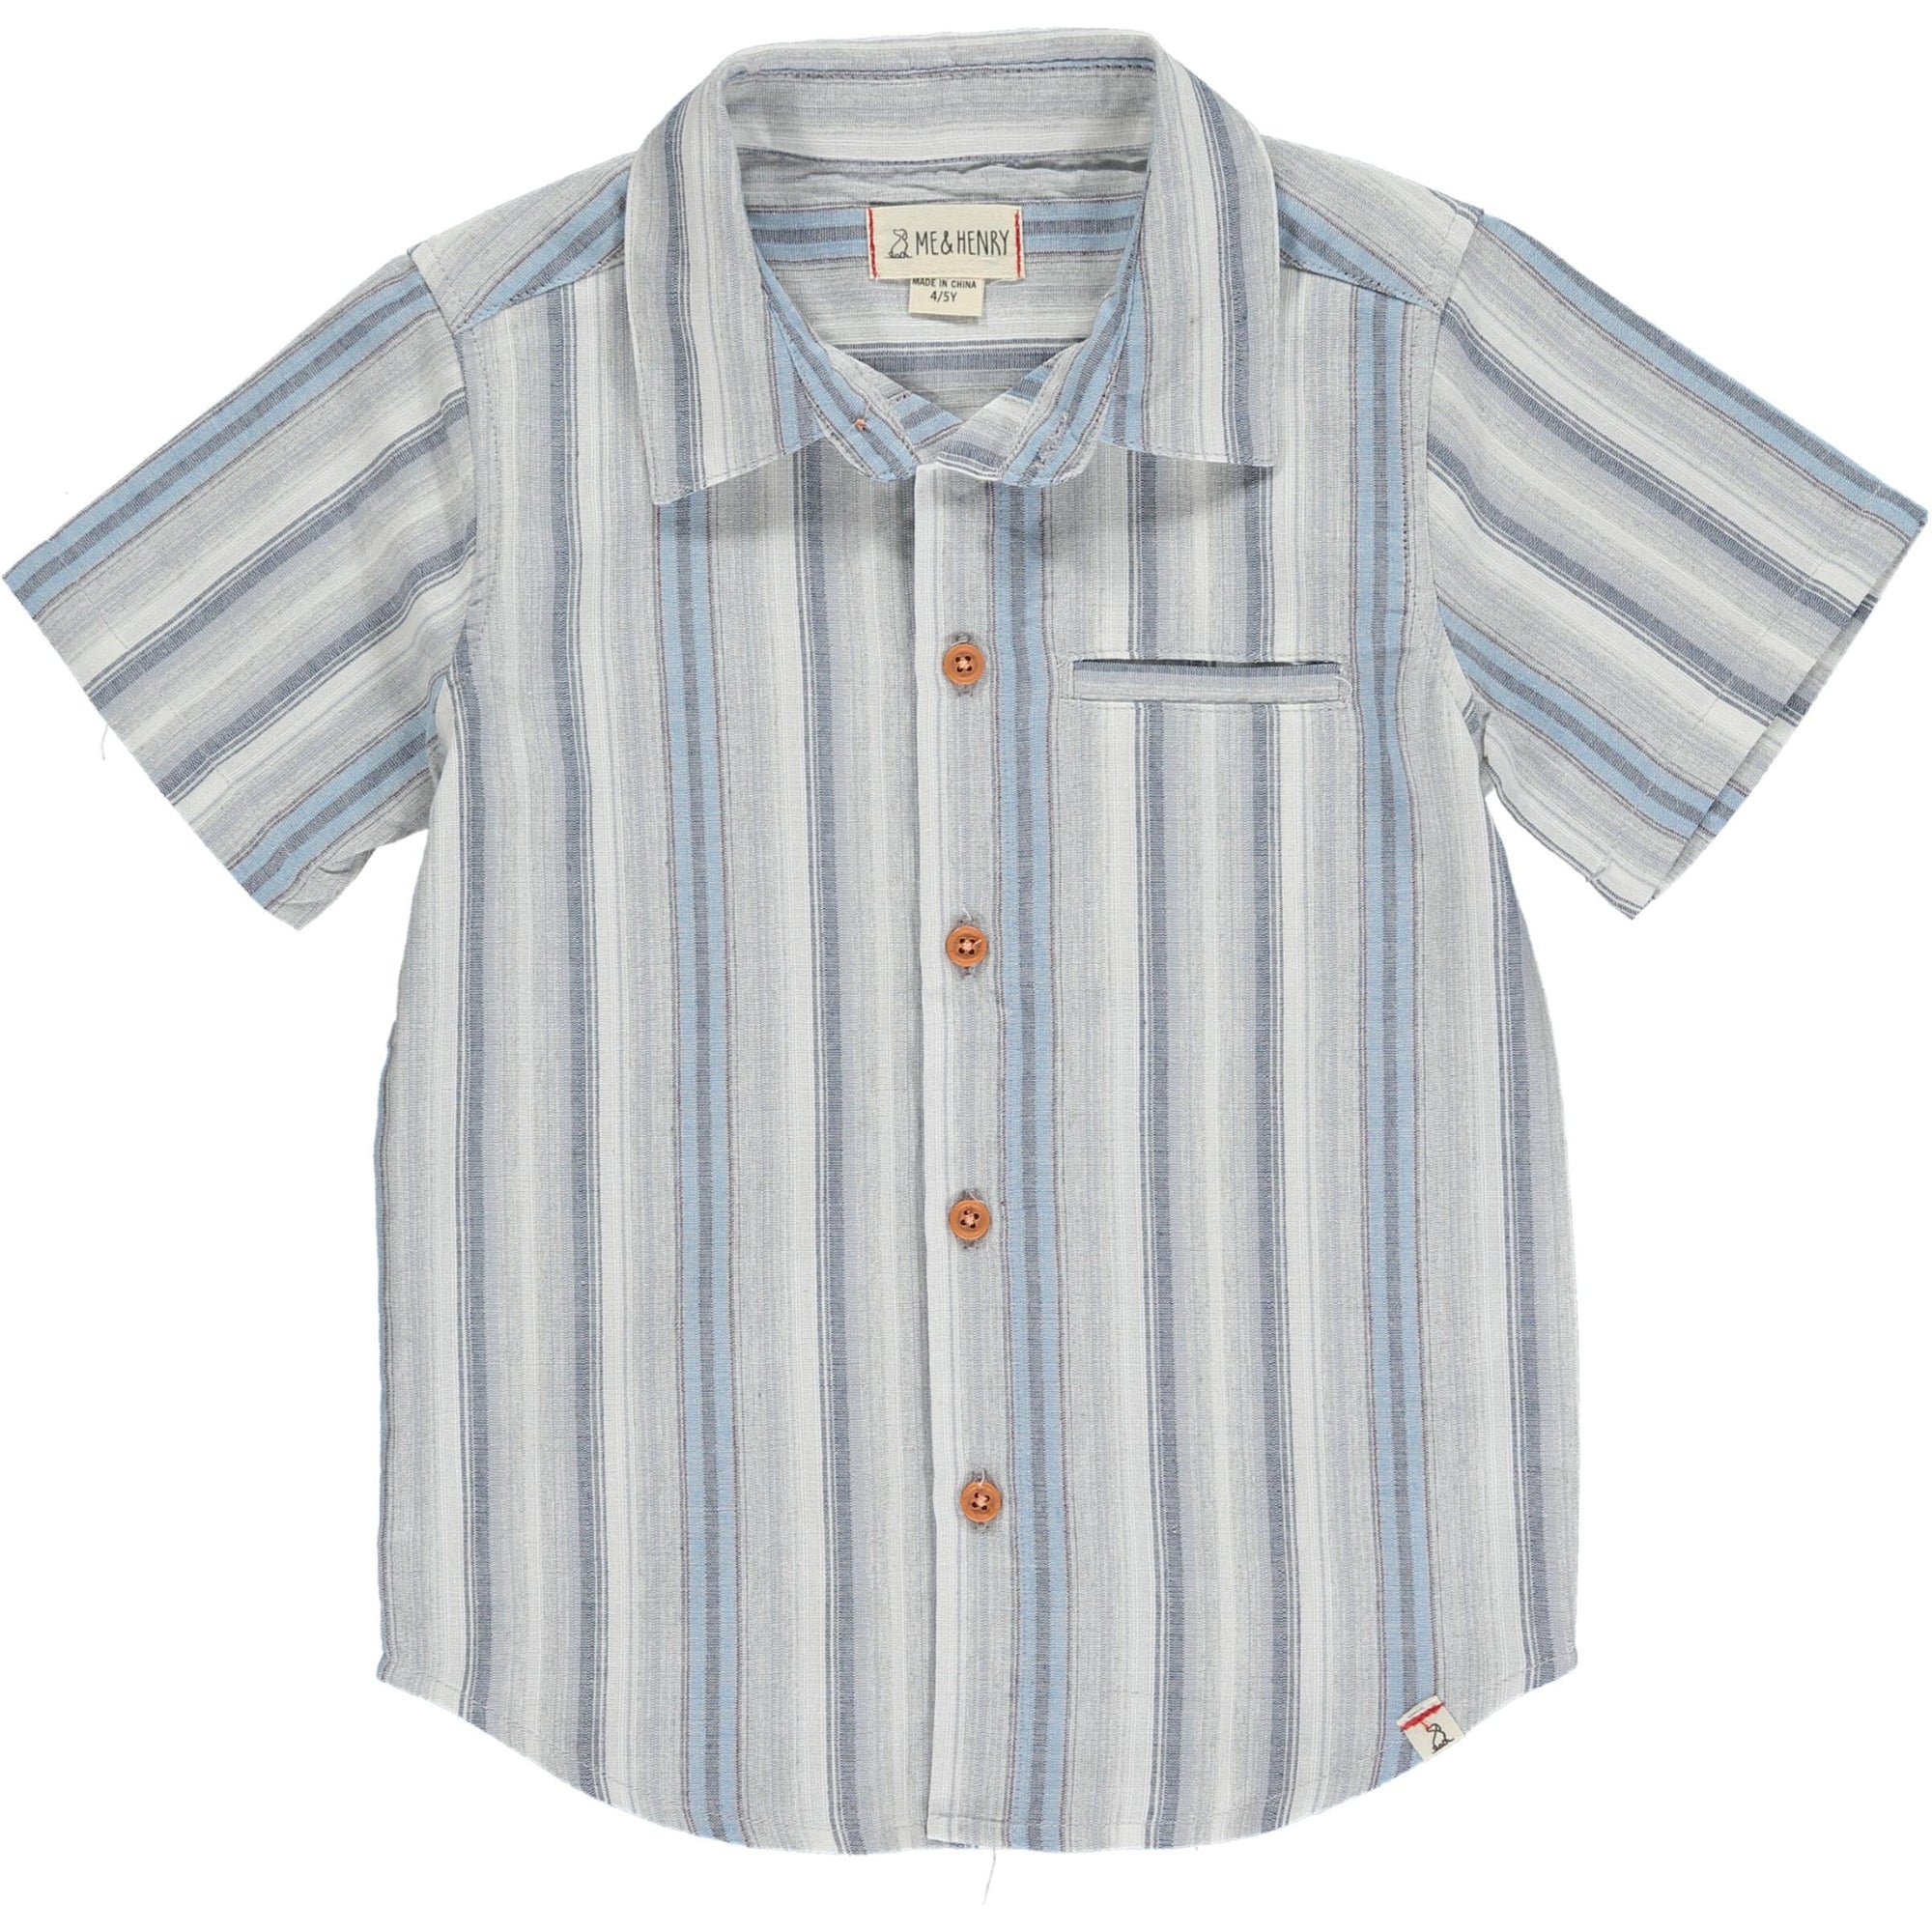 Newport Woven Button Up Shirt / Blue Stripe